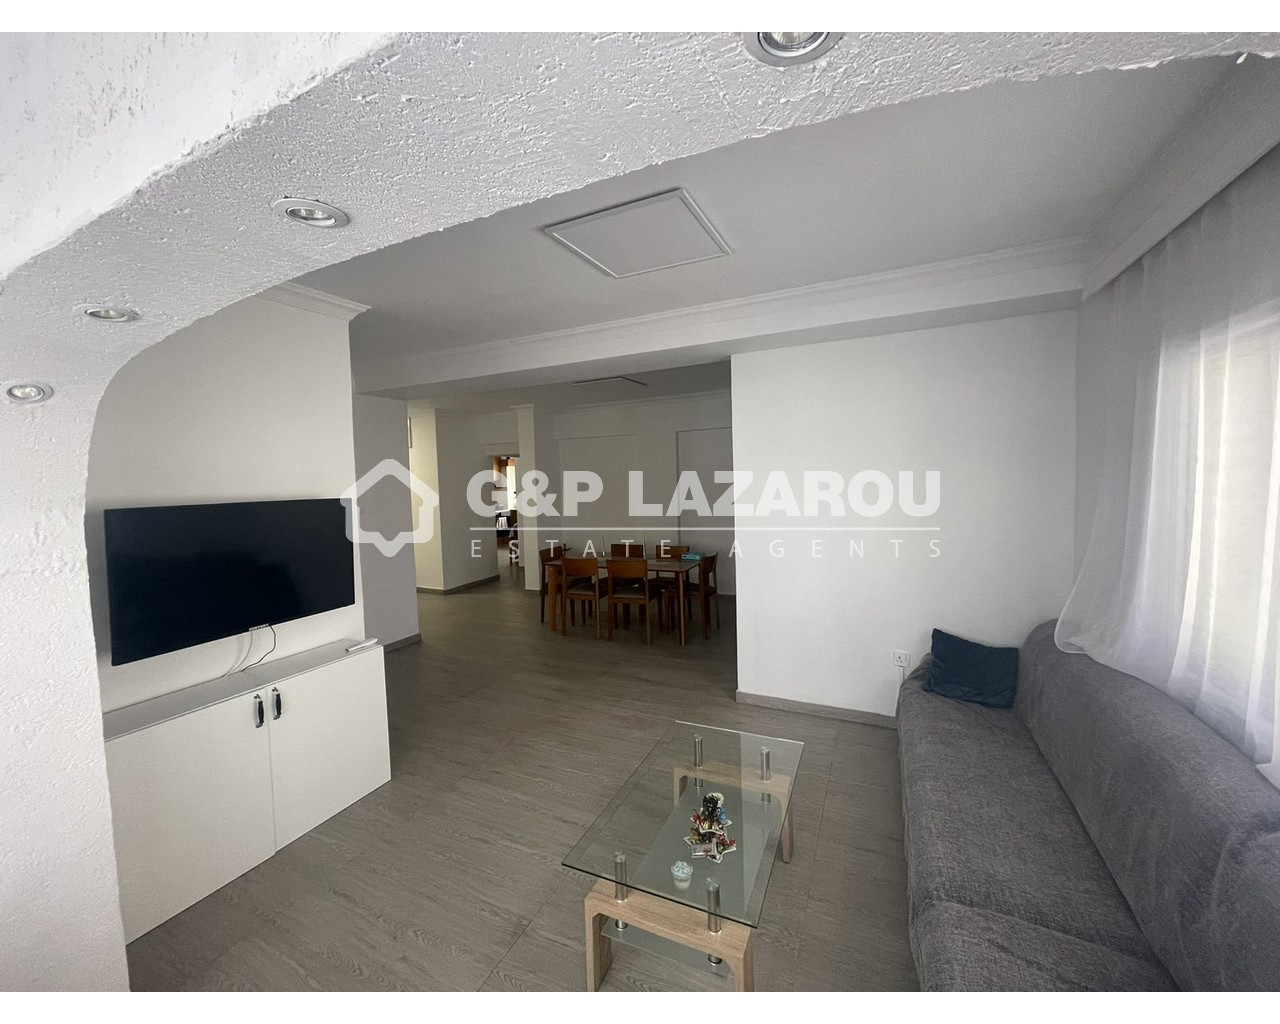 3 Bedroom Apartment for Sale in Agioi Omologites, Nicosia District